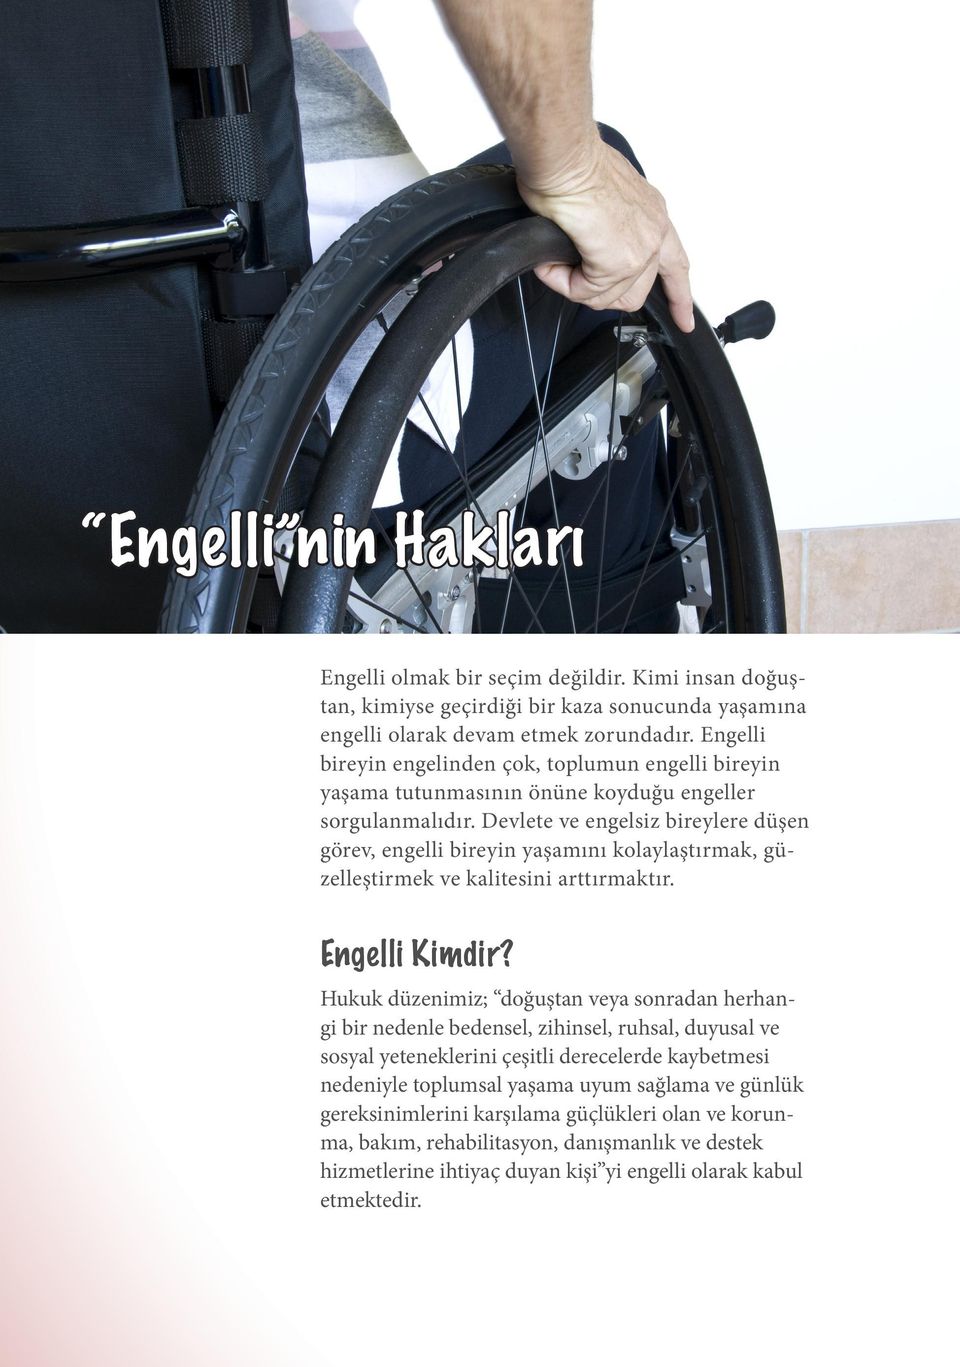 Devlete ve engelsiz bireylere düşen görev, engelli bireyin yaşamını kolaylaştırmak, güzelleştirmek ve kalitesini arttırmaktır. Engelli Kimdir?